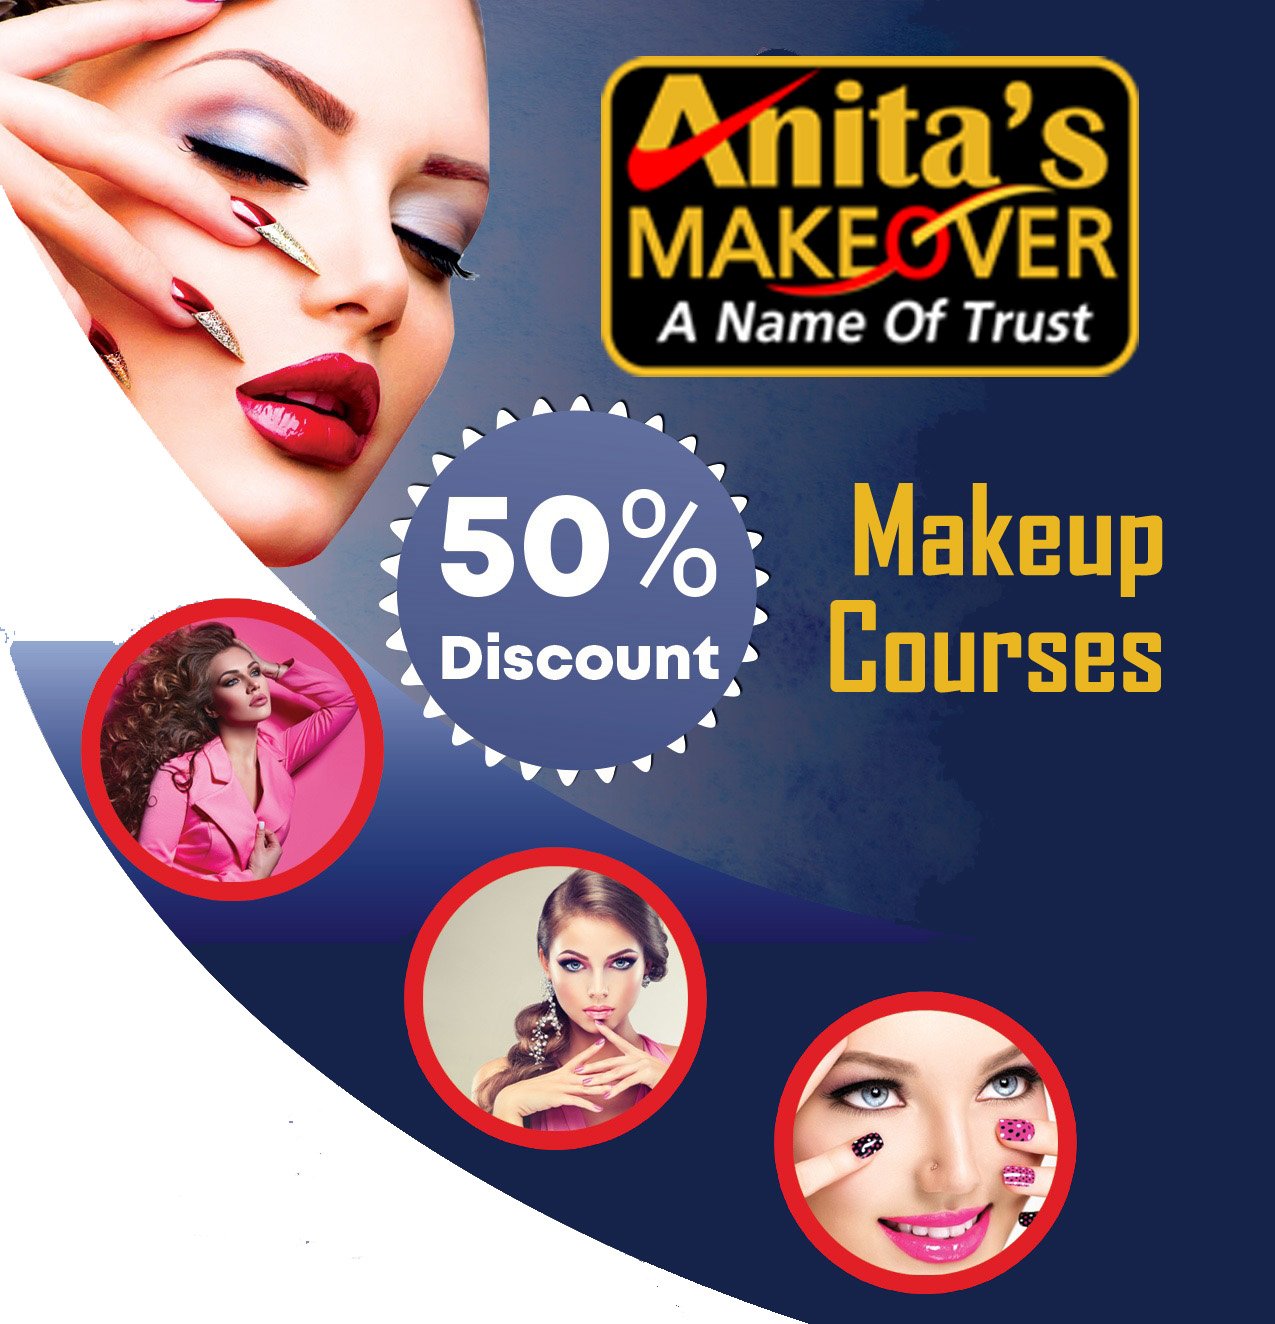 Makeup Classes in Carterpuri Gurgaon